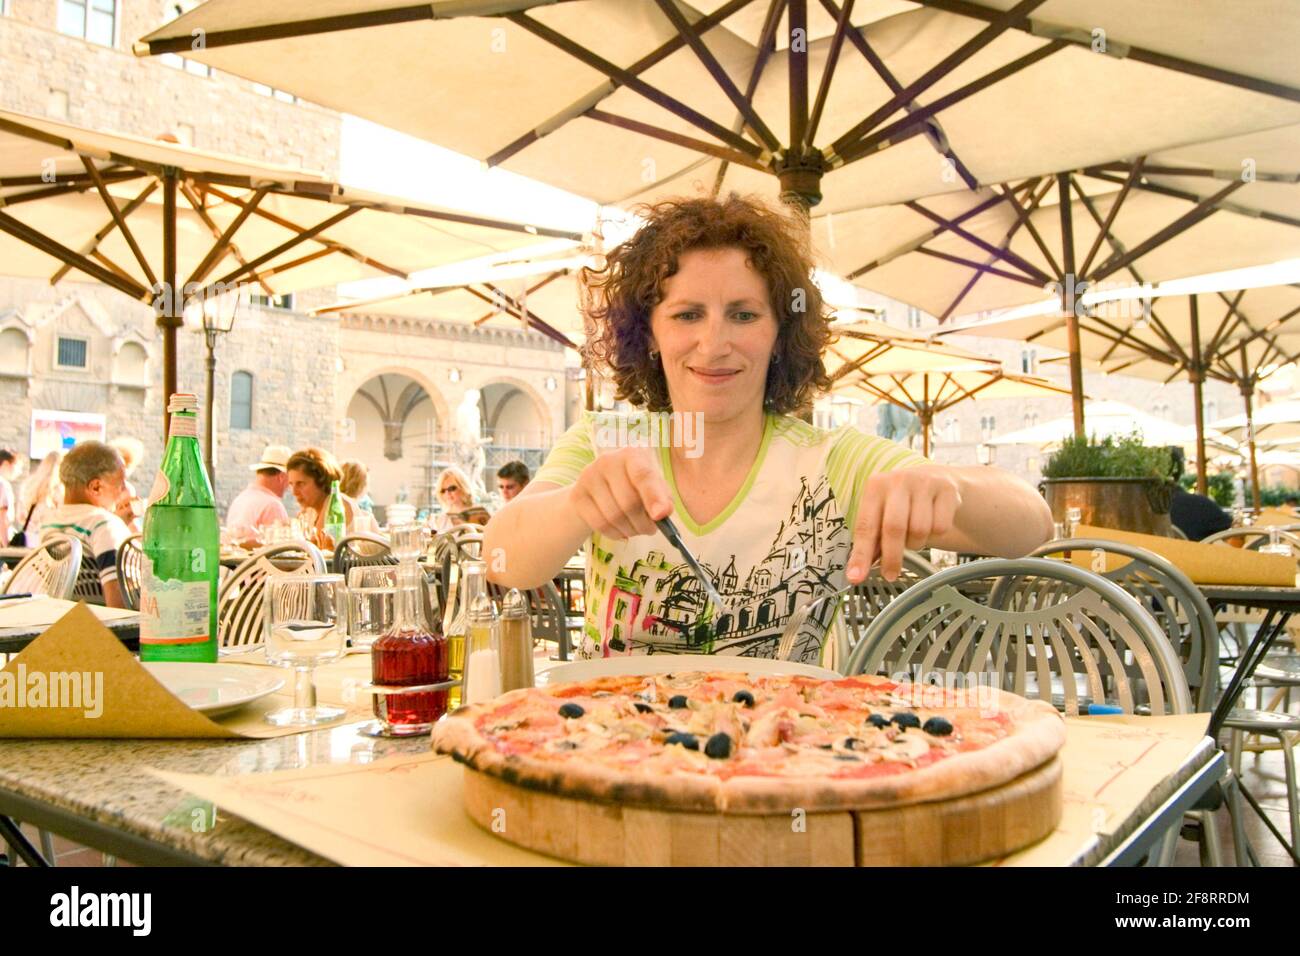 woman eating pizza, Austria Stock Photo